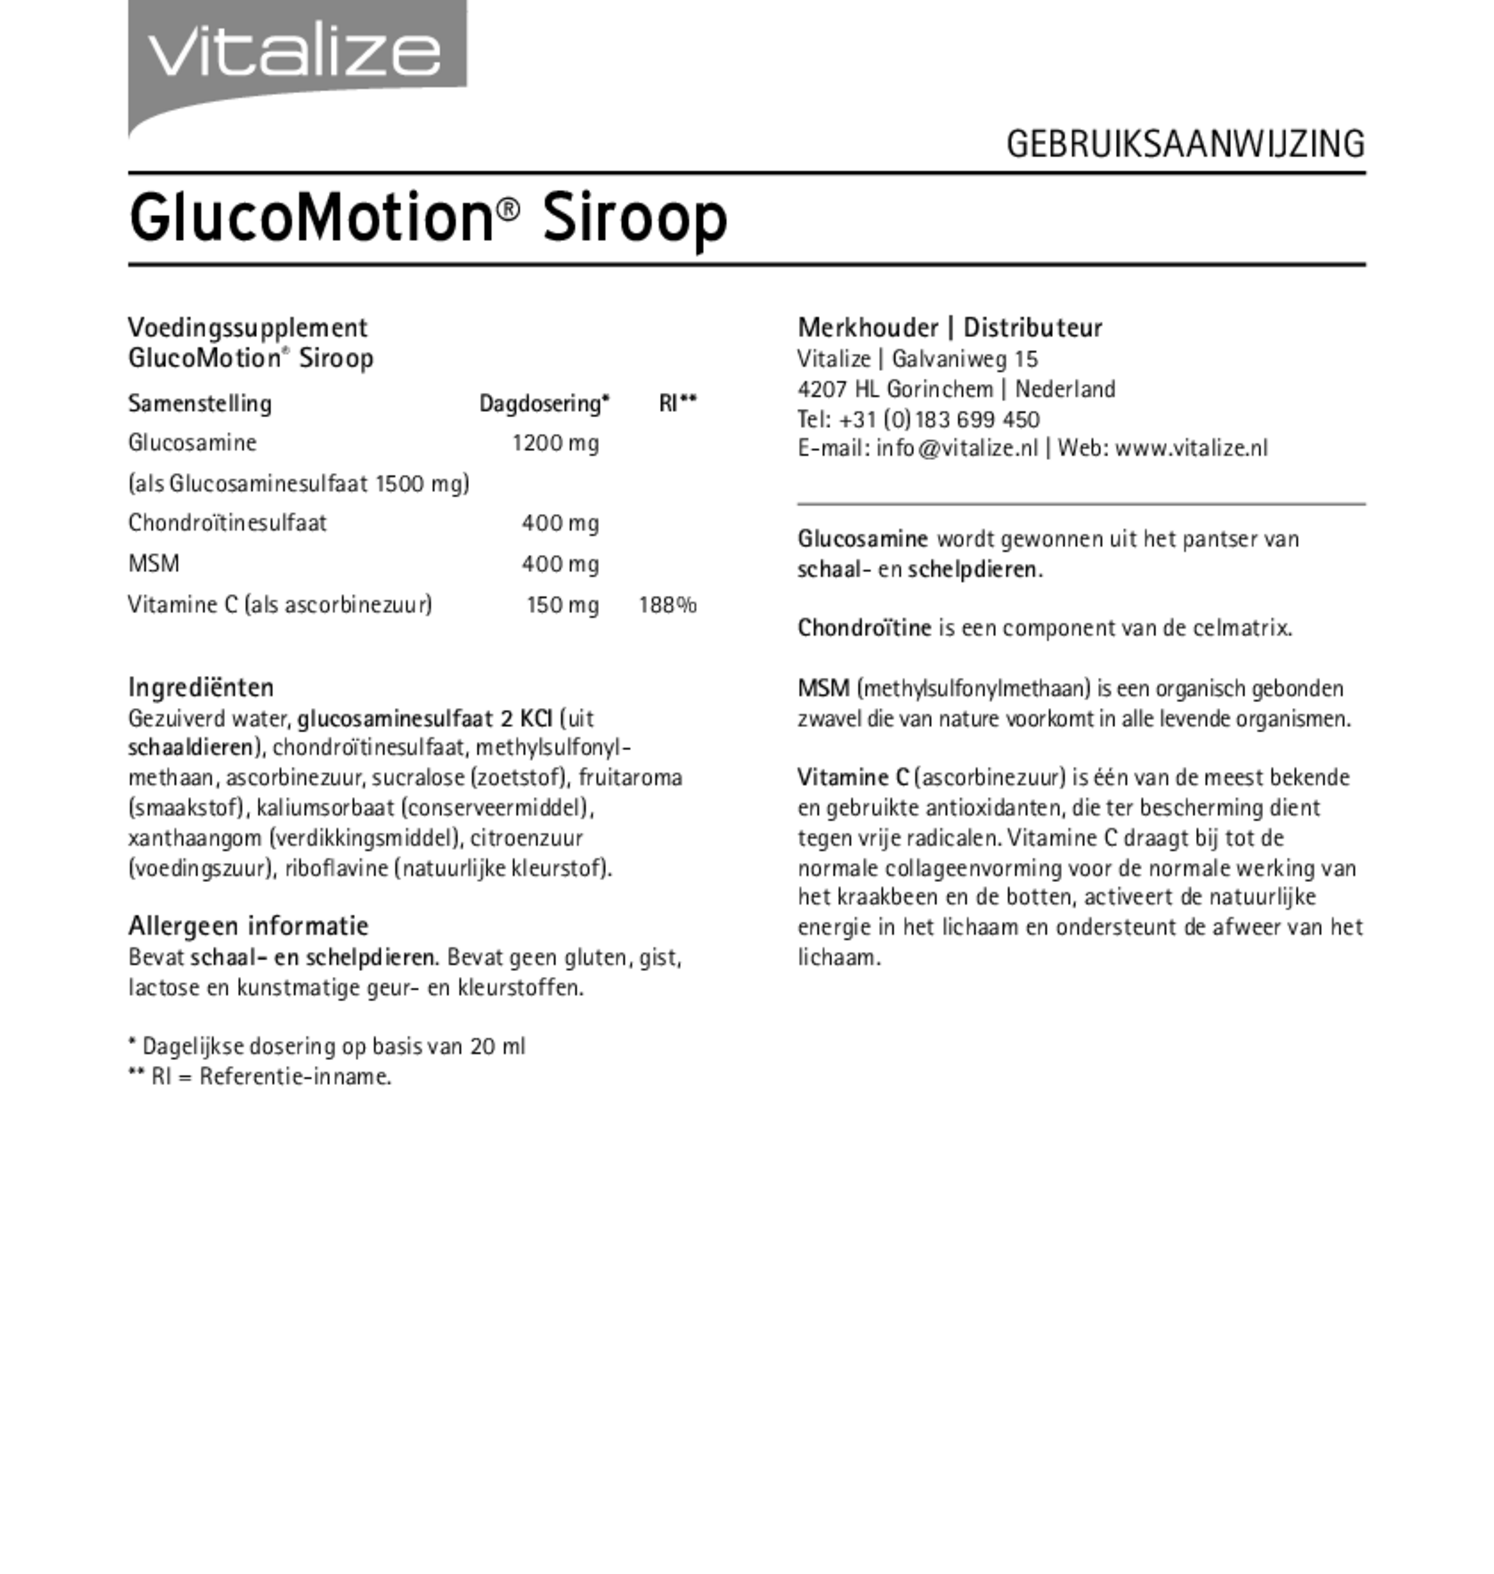 GlucoMotion Siroop afbeelding van document #1, gebruiksaanwijzing